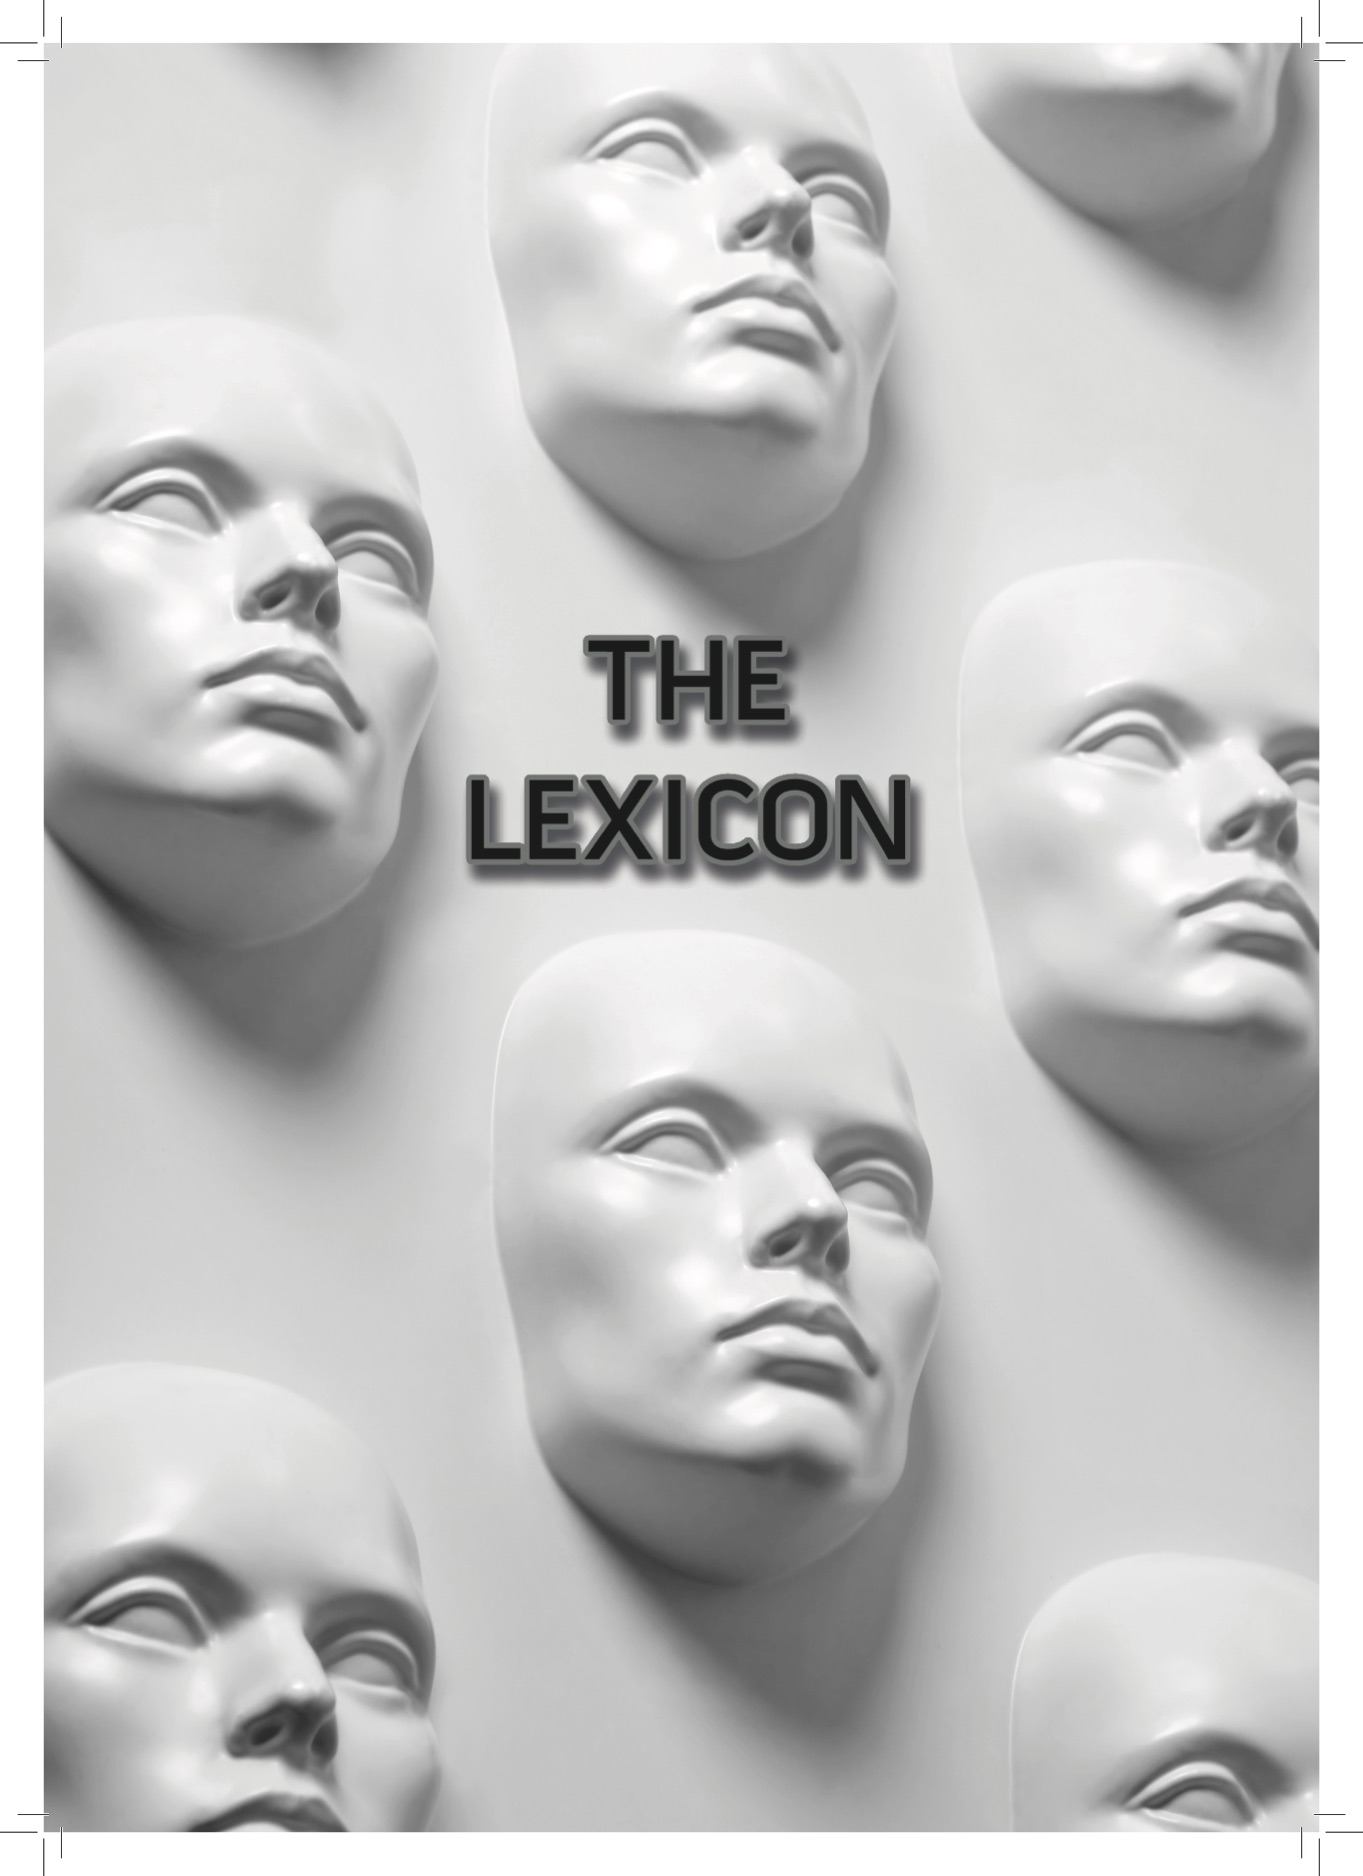 The Lexicon